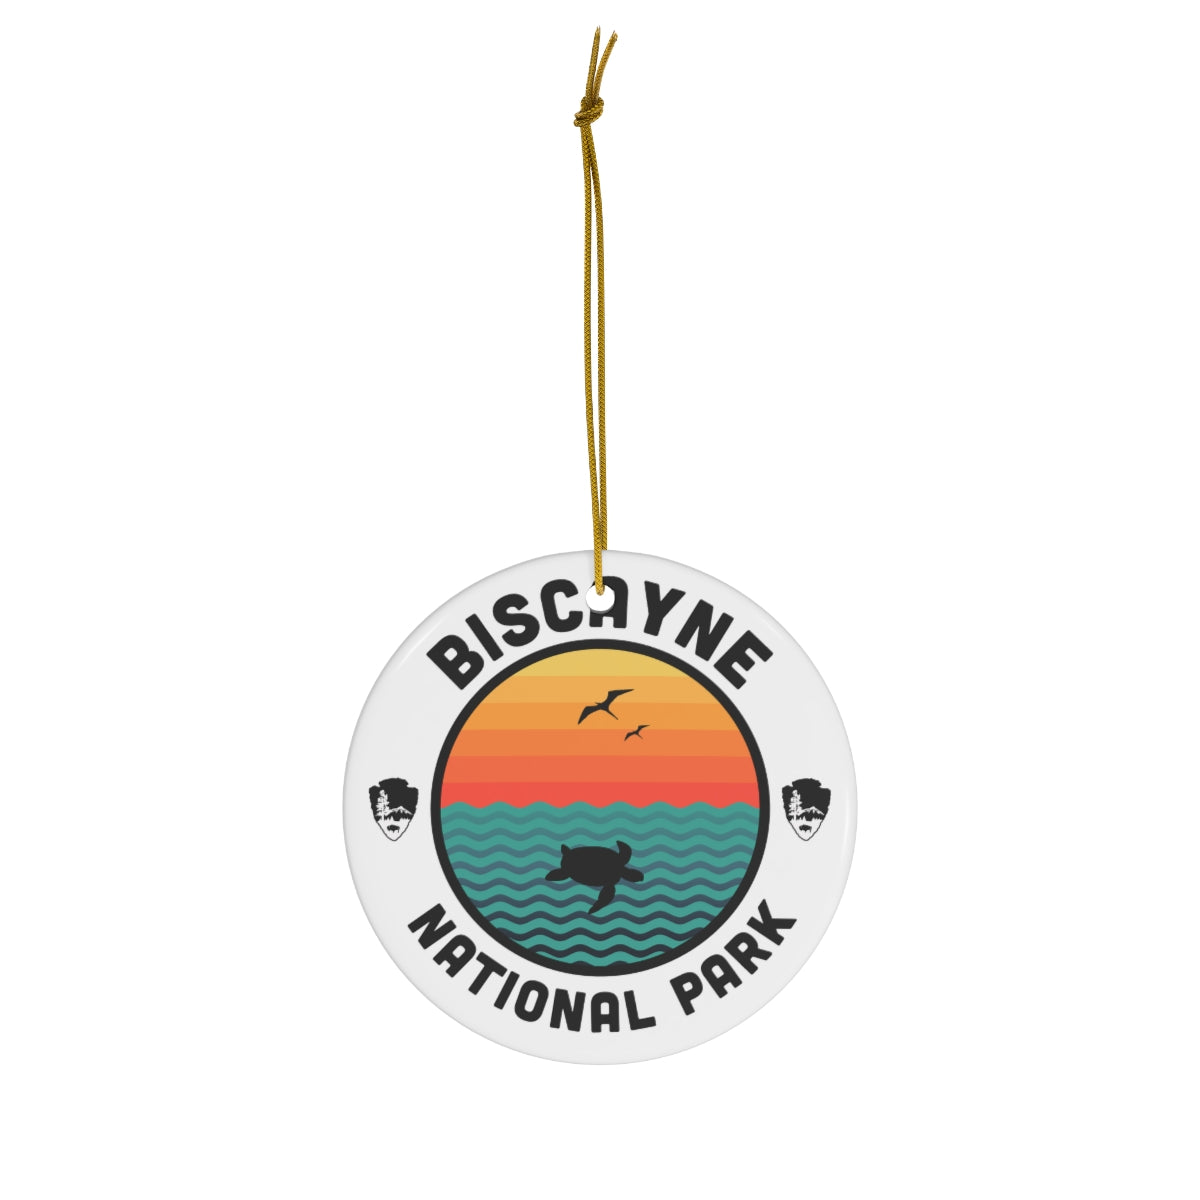 Biscayne National Park Ornament - Round Emblem Design